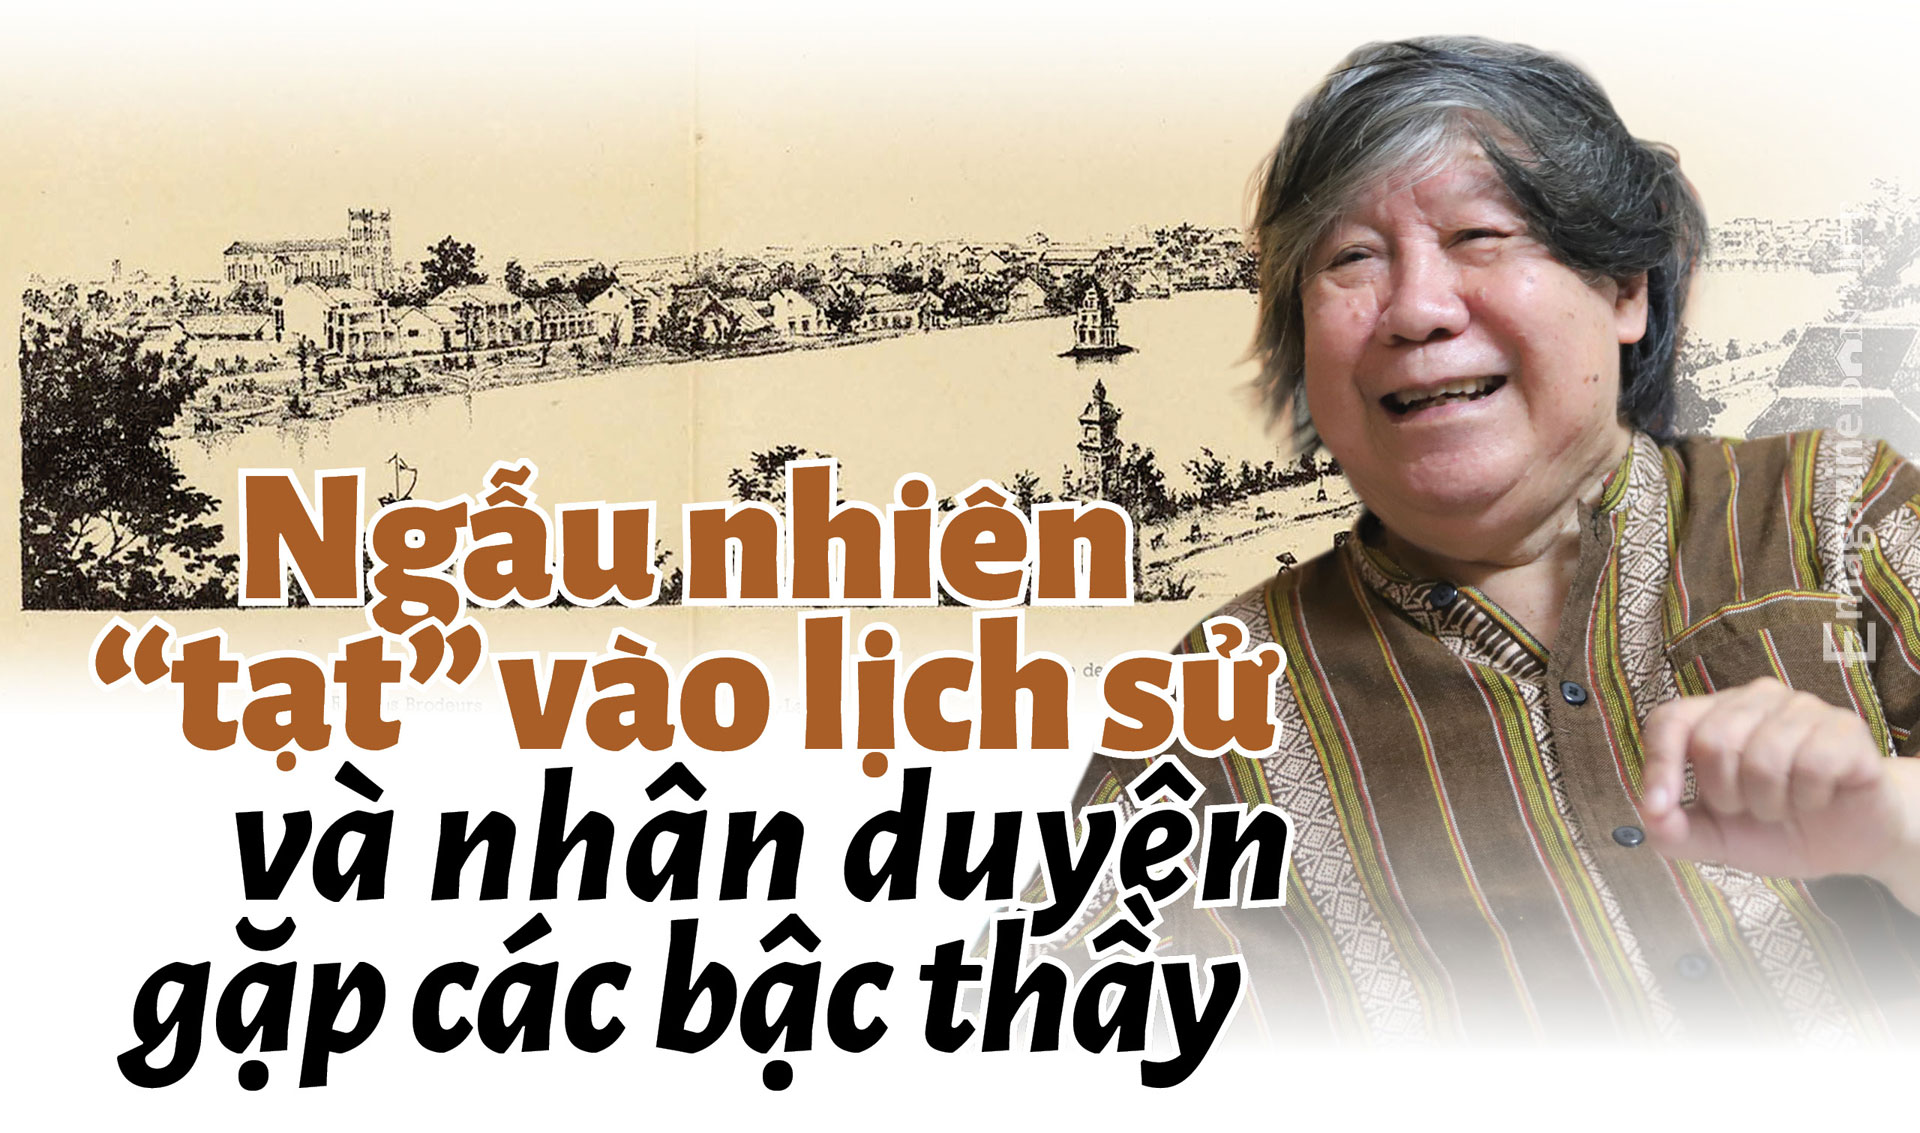 Giáo sư Lê Văn Lan: Một đời nghiên cứu cổ sử và chuyện tình yêu ở tuổi 90 - Ảnh 3.